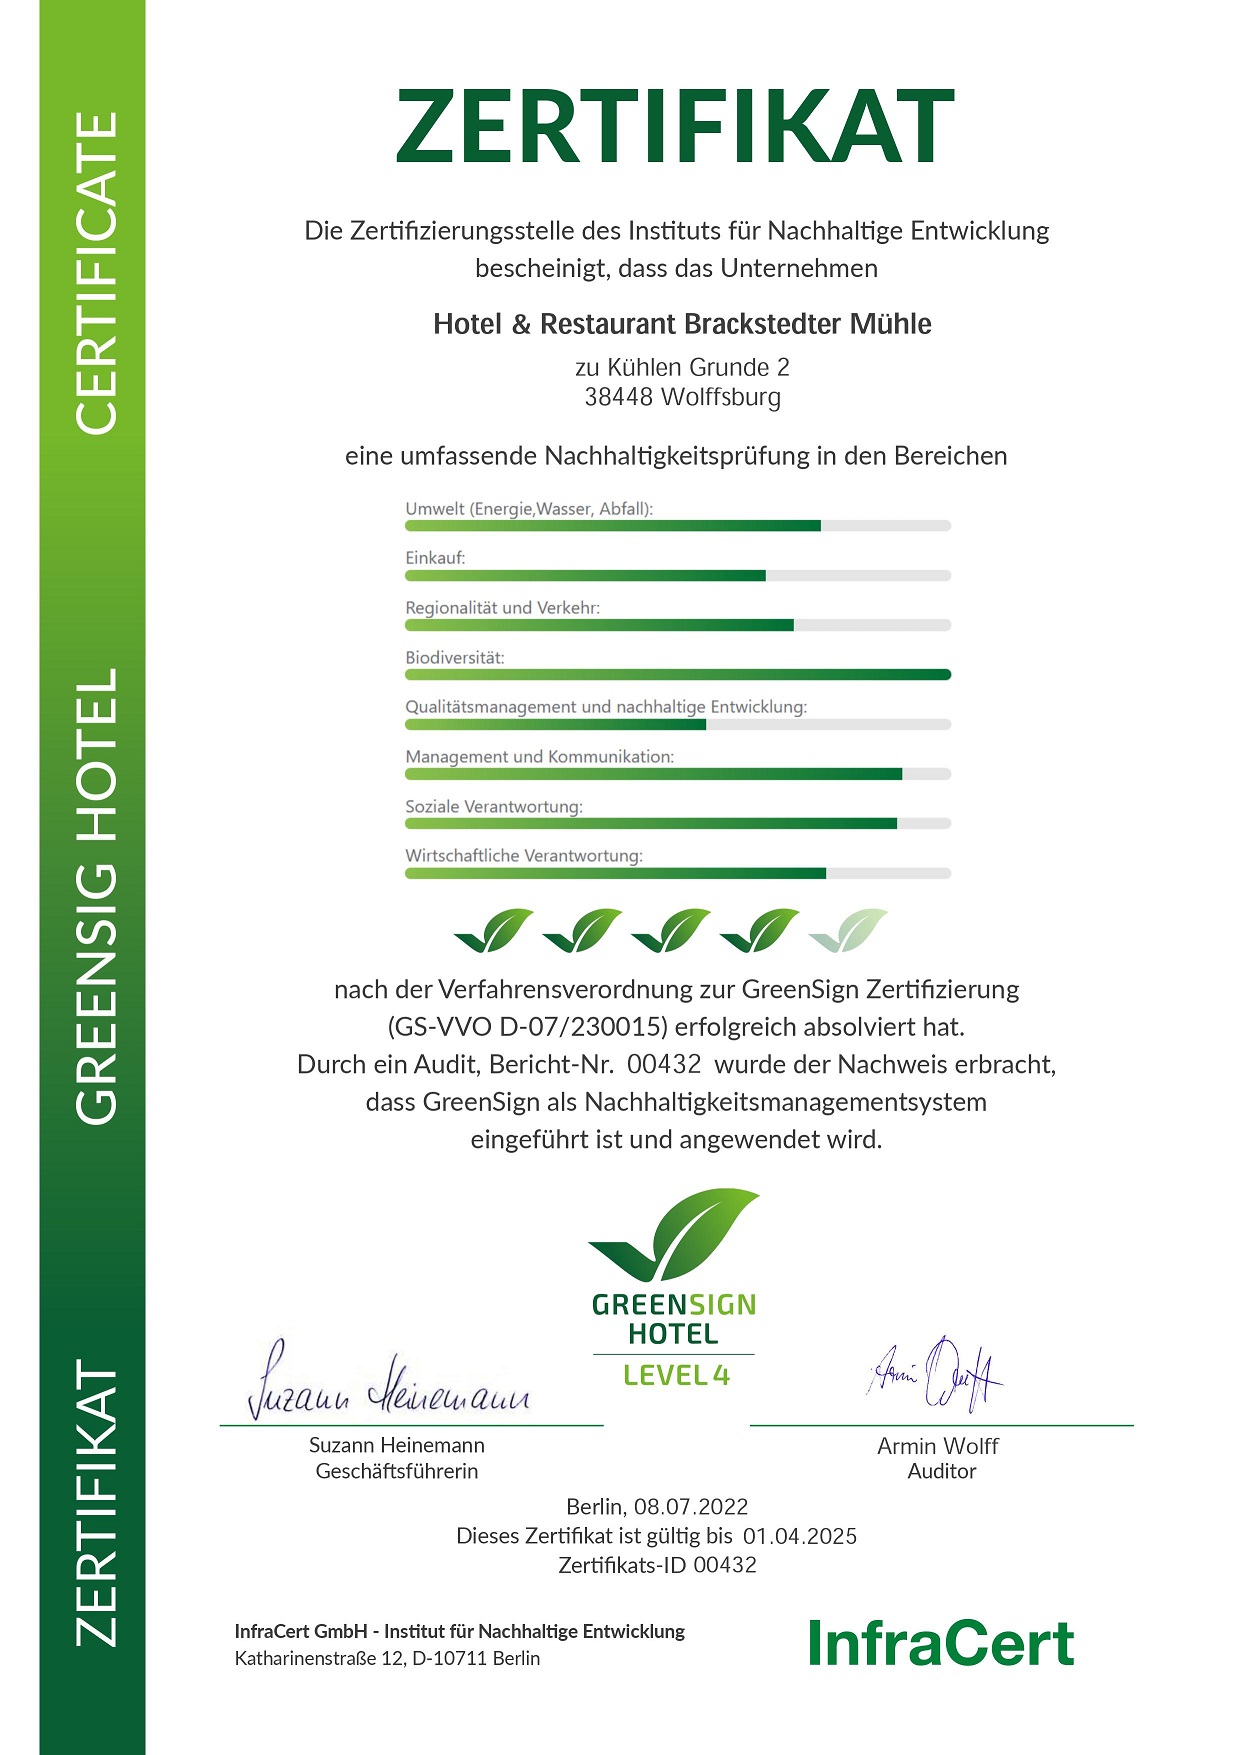 GreenSign-Zertifizierung